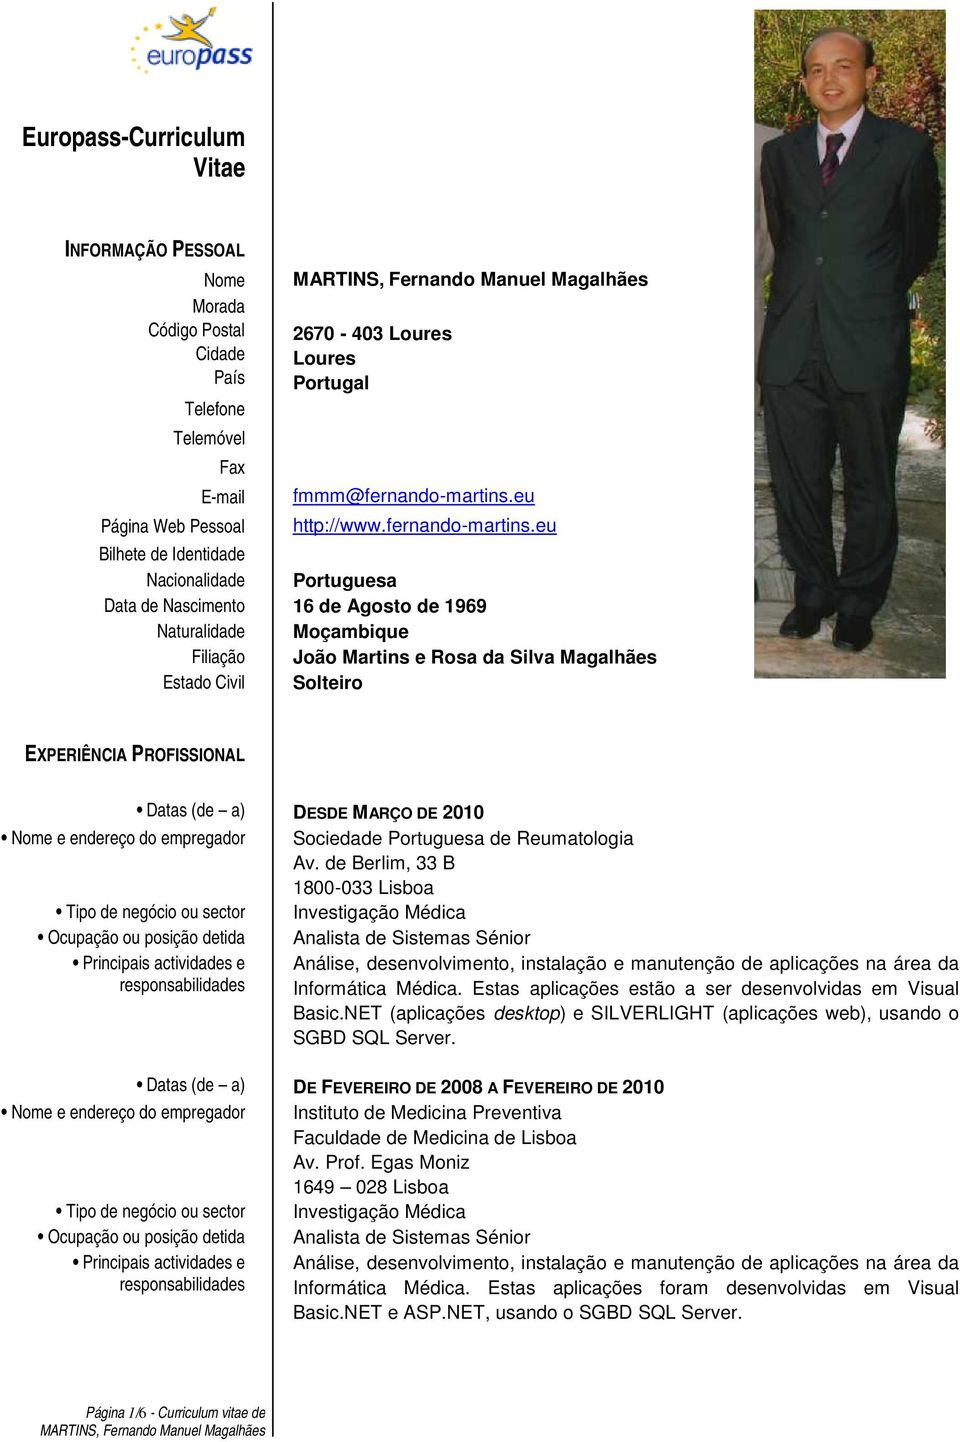 eu Bilhete de Identidade Nacionalidade Portuguesa Data de Nascimento 16 de Agosto de 1969 Naturalidade Moçambique Filiação João Martins e Rosa da Silva Magalhães Estado Civil Solteiro EXPERIÊNCIA